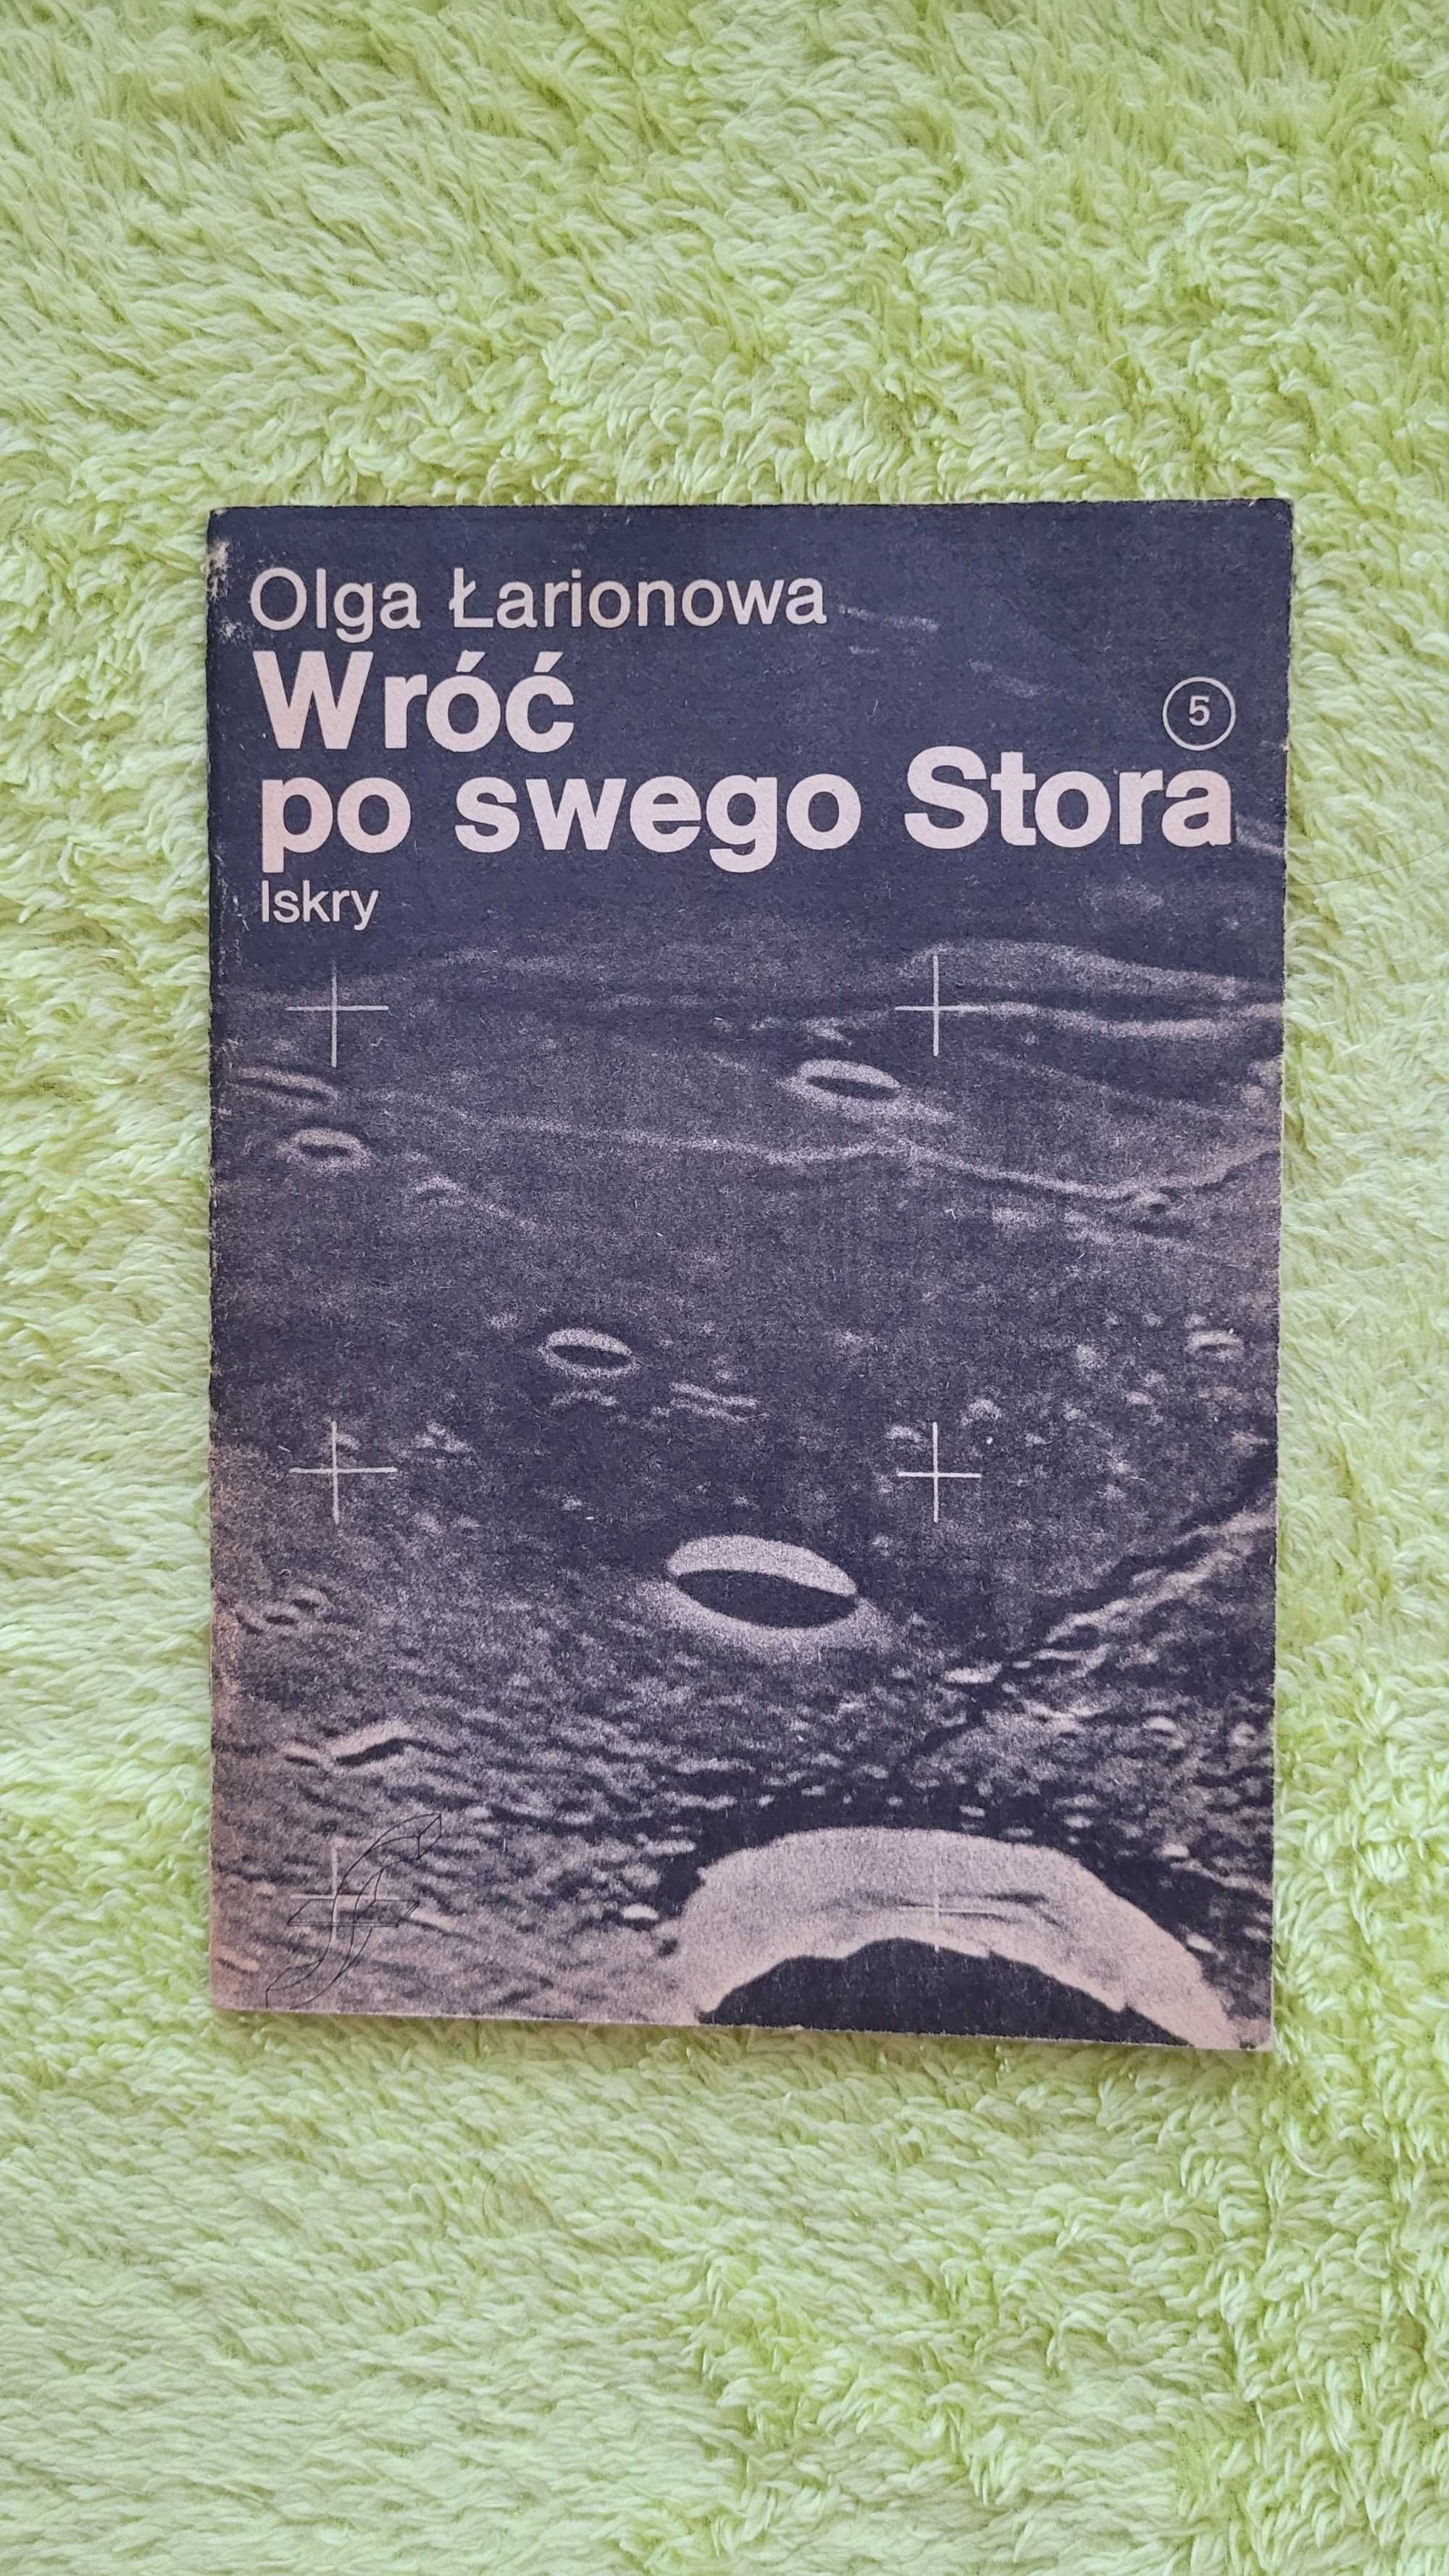 Książka: "Wróć po swego Stora", Olga Łarionowa